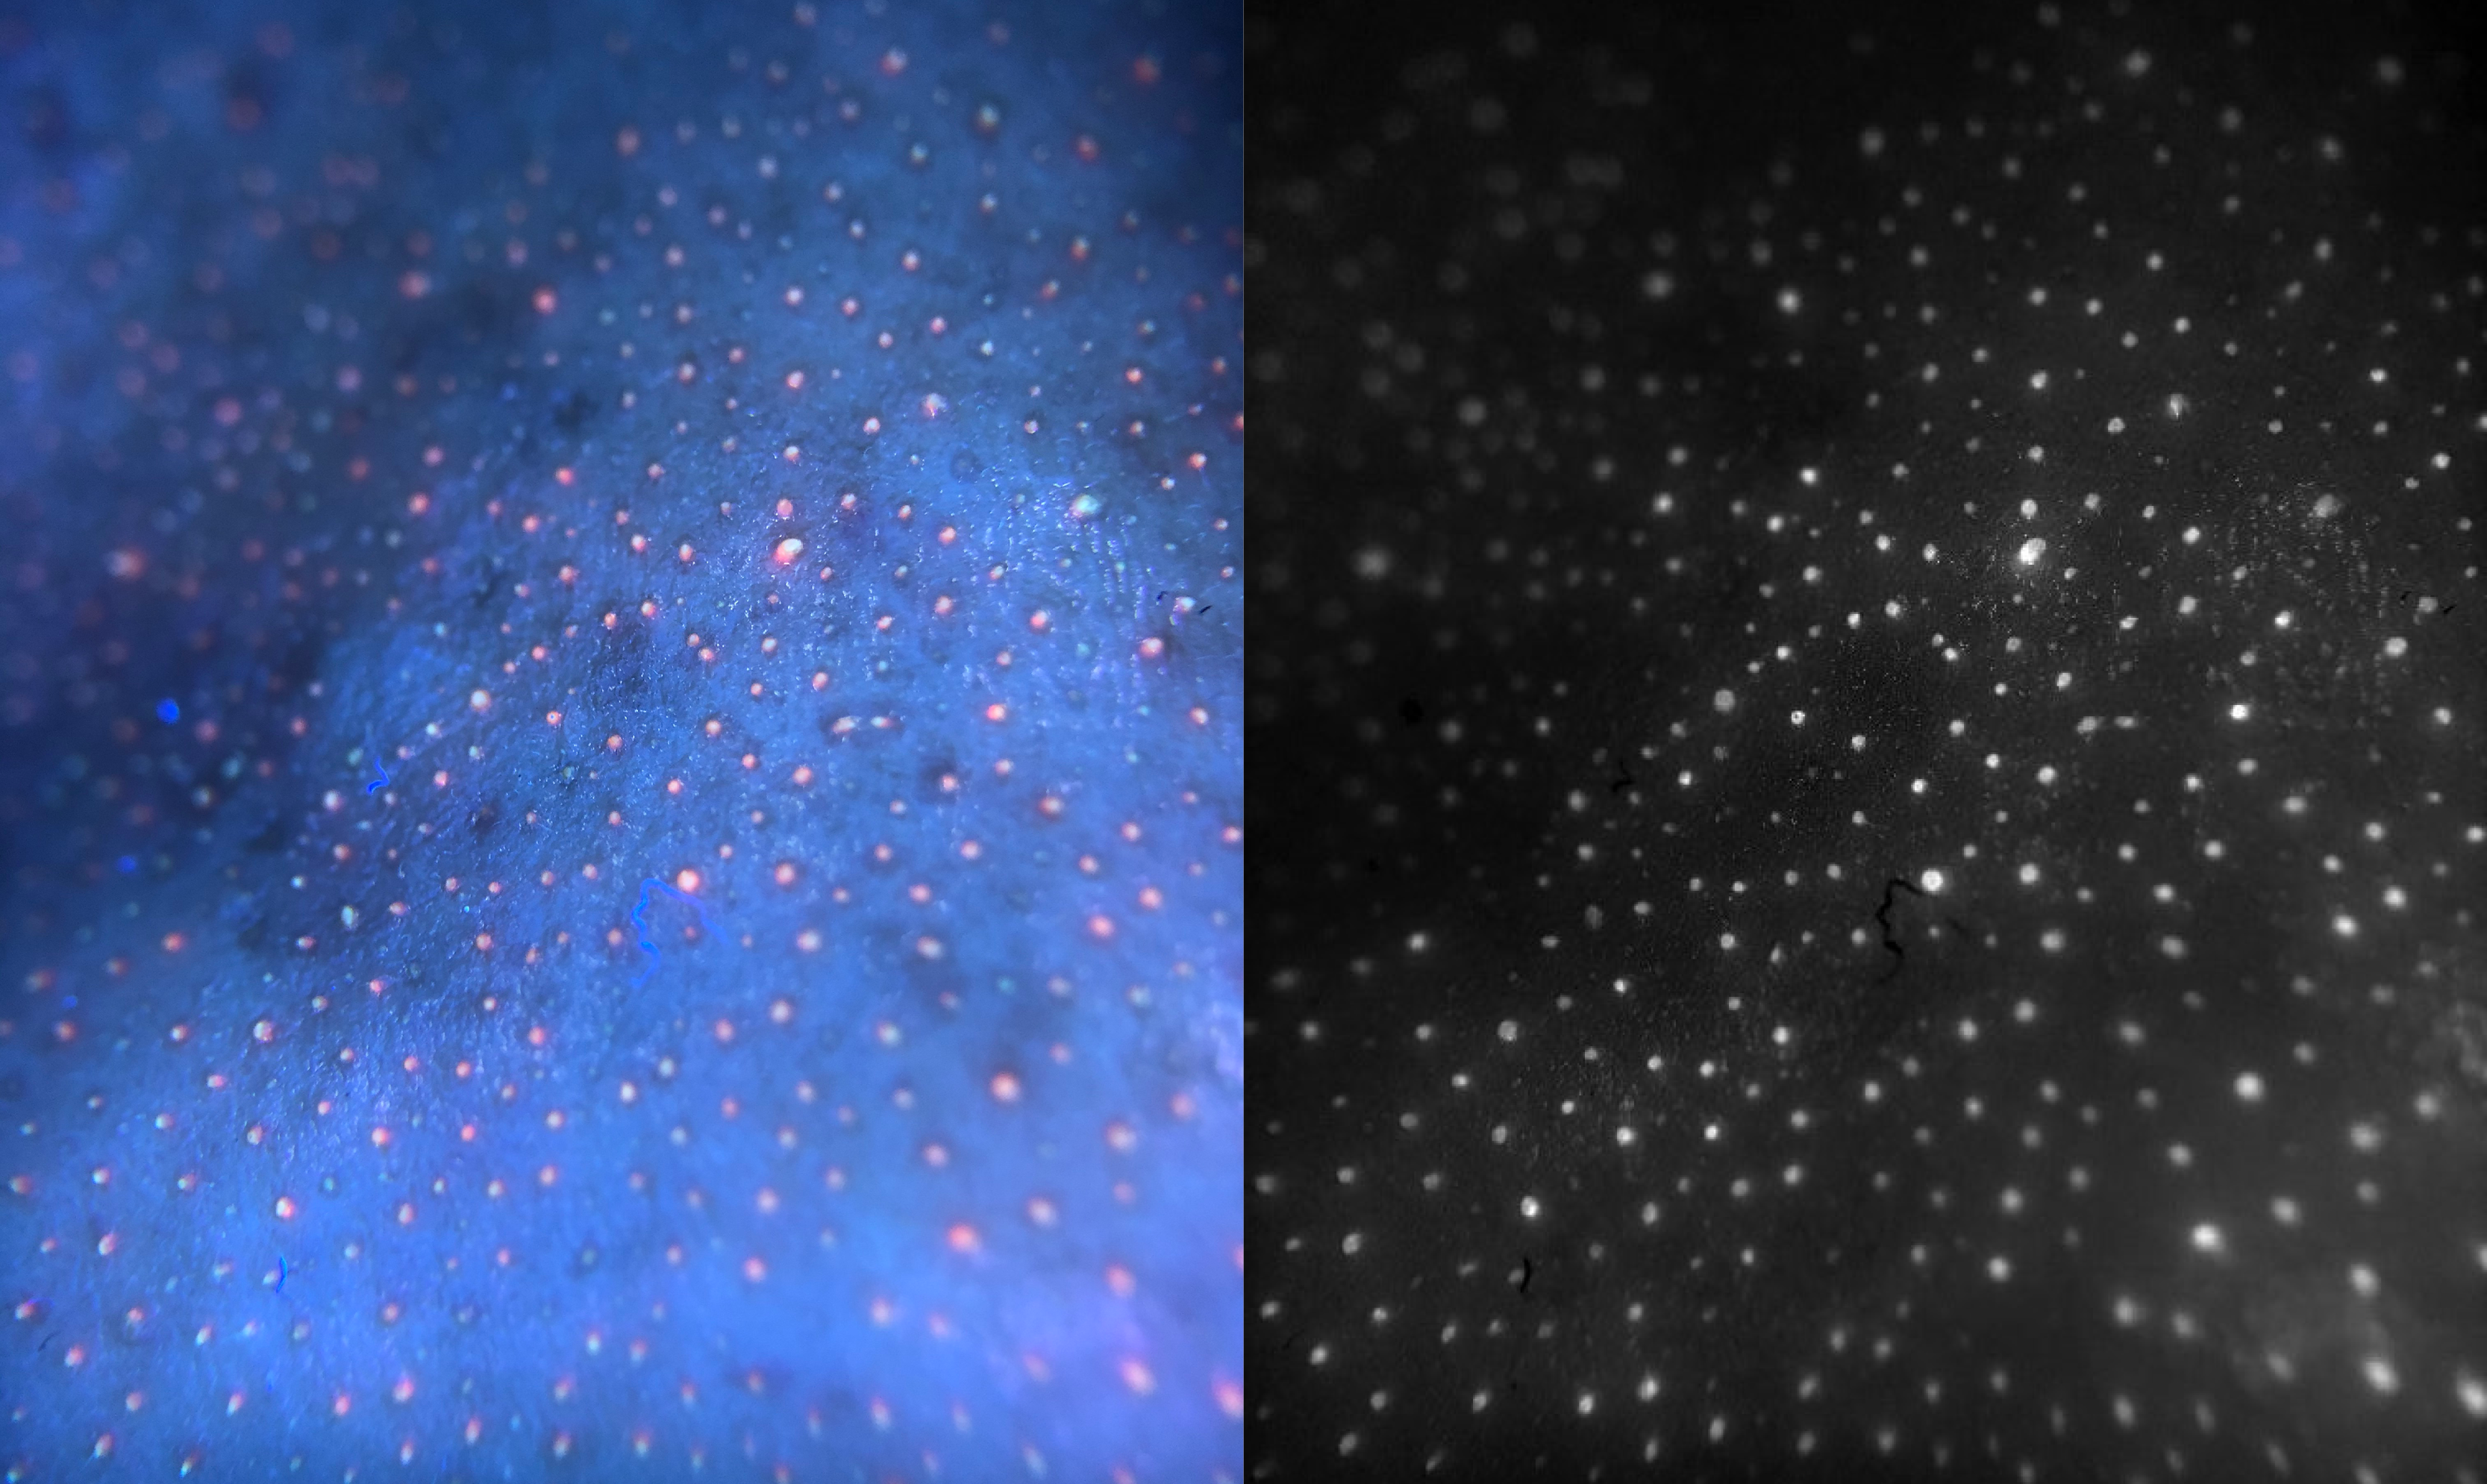 Справа - изображение RGB-автофлуоресценции кожи лица добровольца. Слева - псевдомультиспектральное изображение той же области, с удалением загрязнений от фоновых сигналов. Белые области на псевдомультиспектральном изображении указывают на высокий уровень порфиринов.